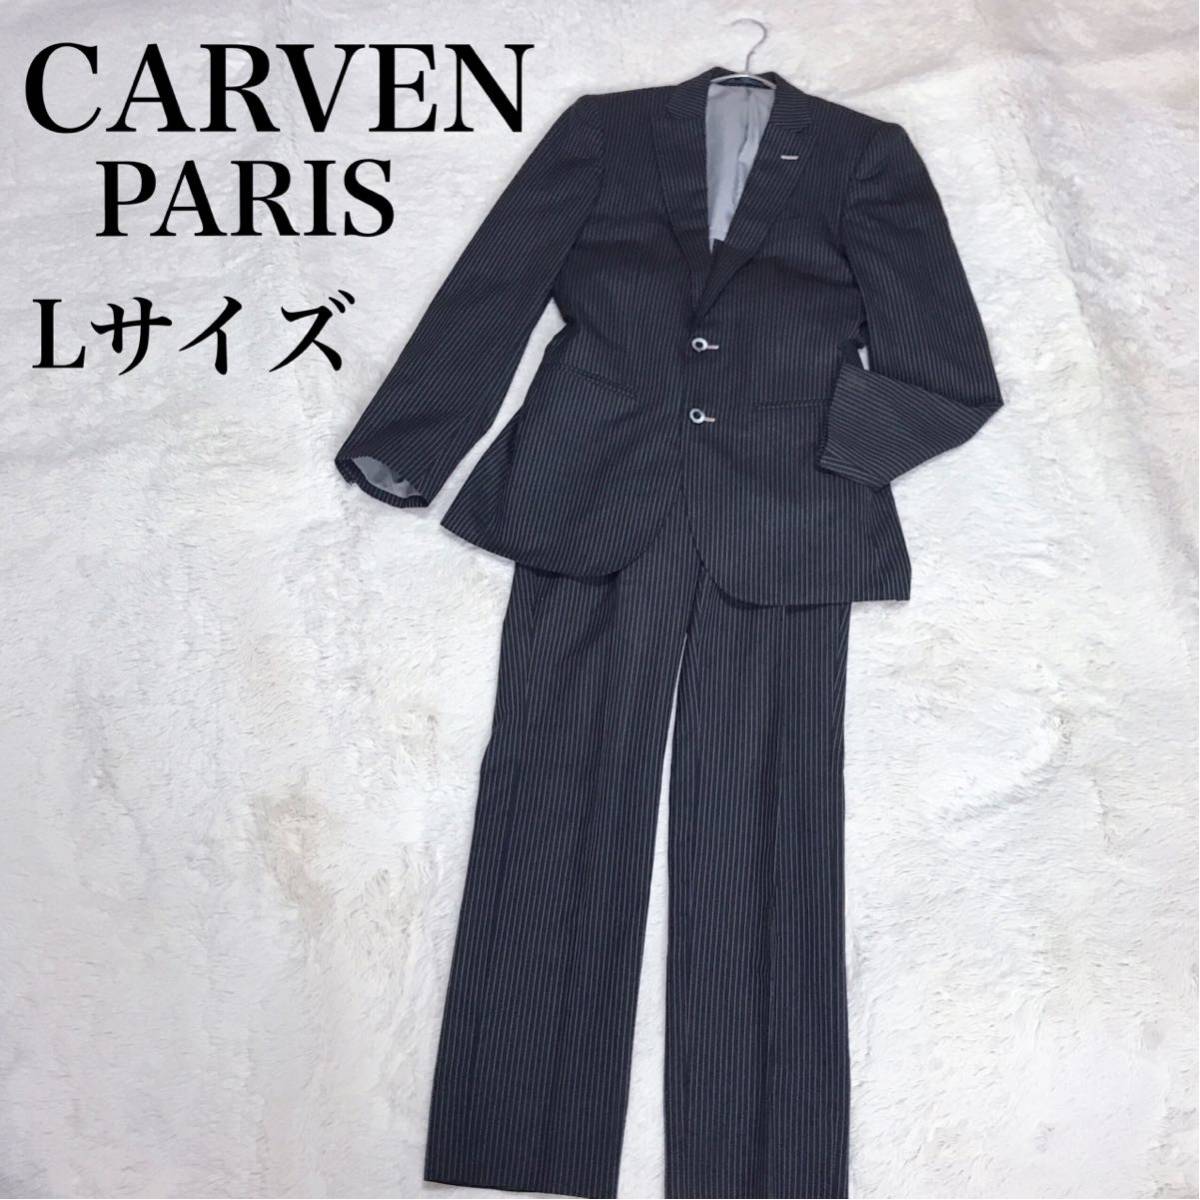 CARVEN Paris ストライプ セットアップ スーツ ジャケット パンツ カルヴェン